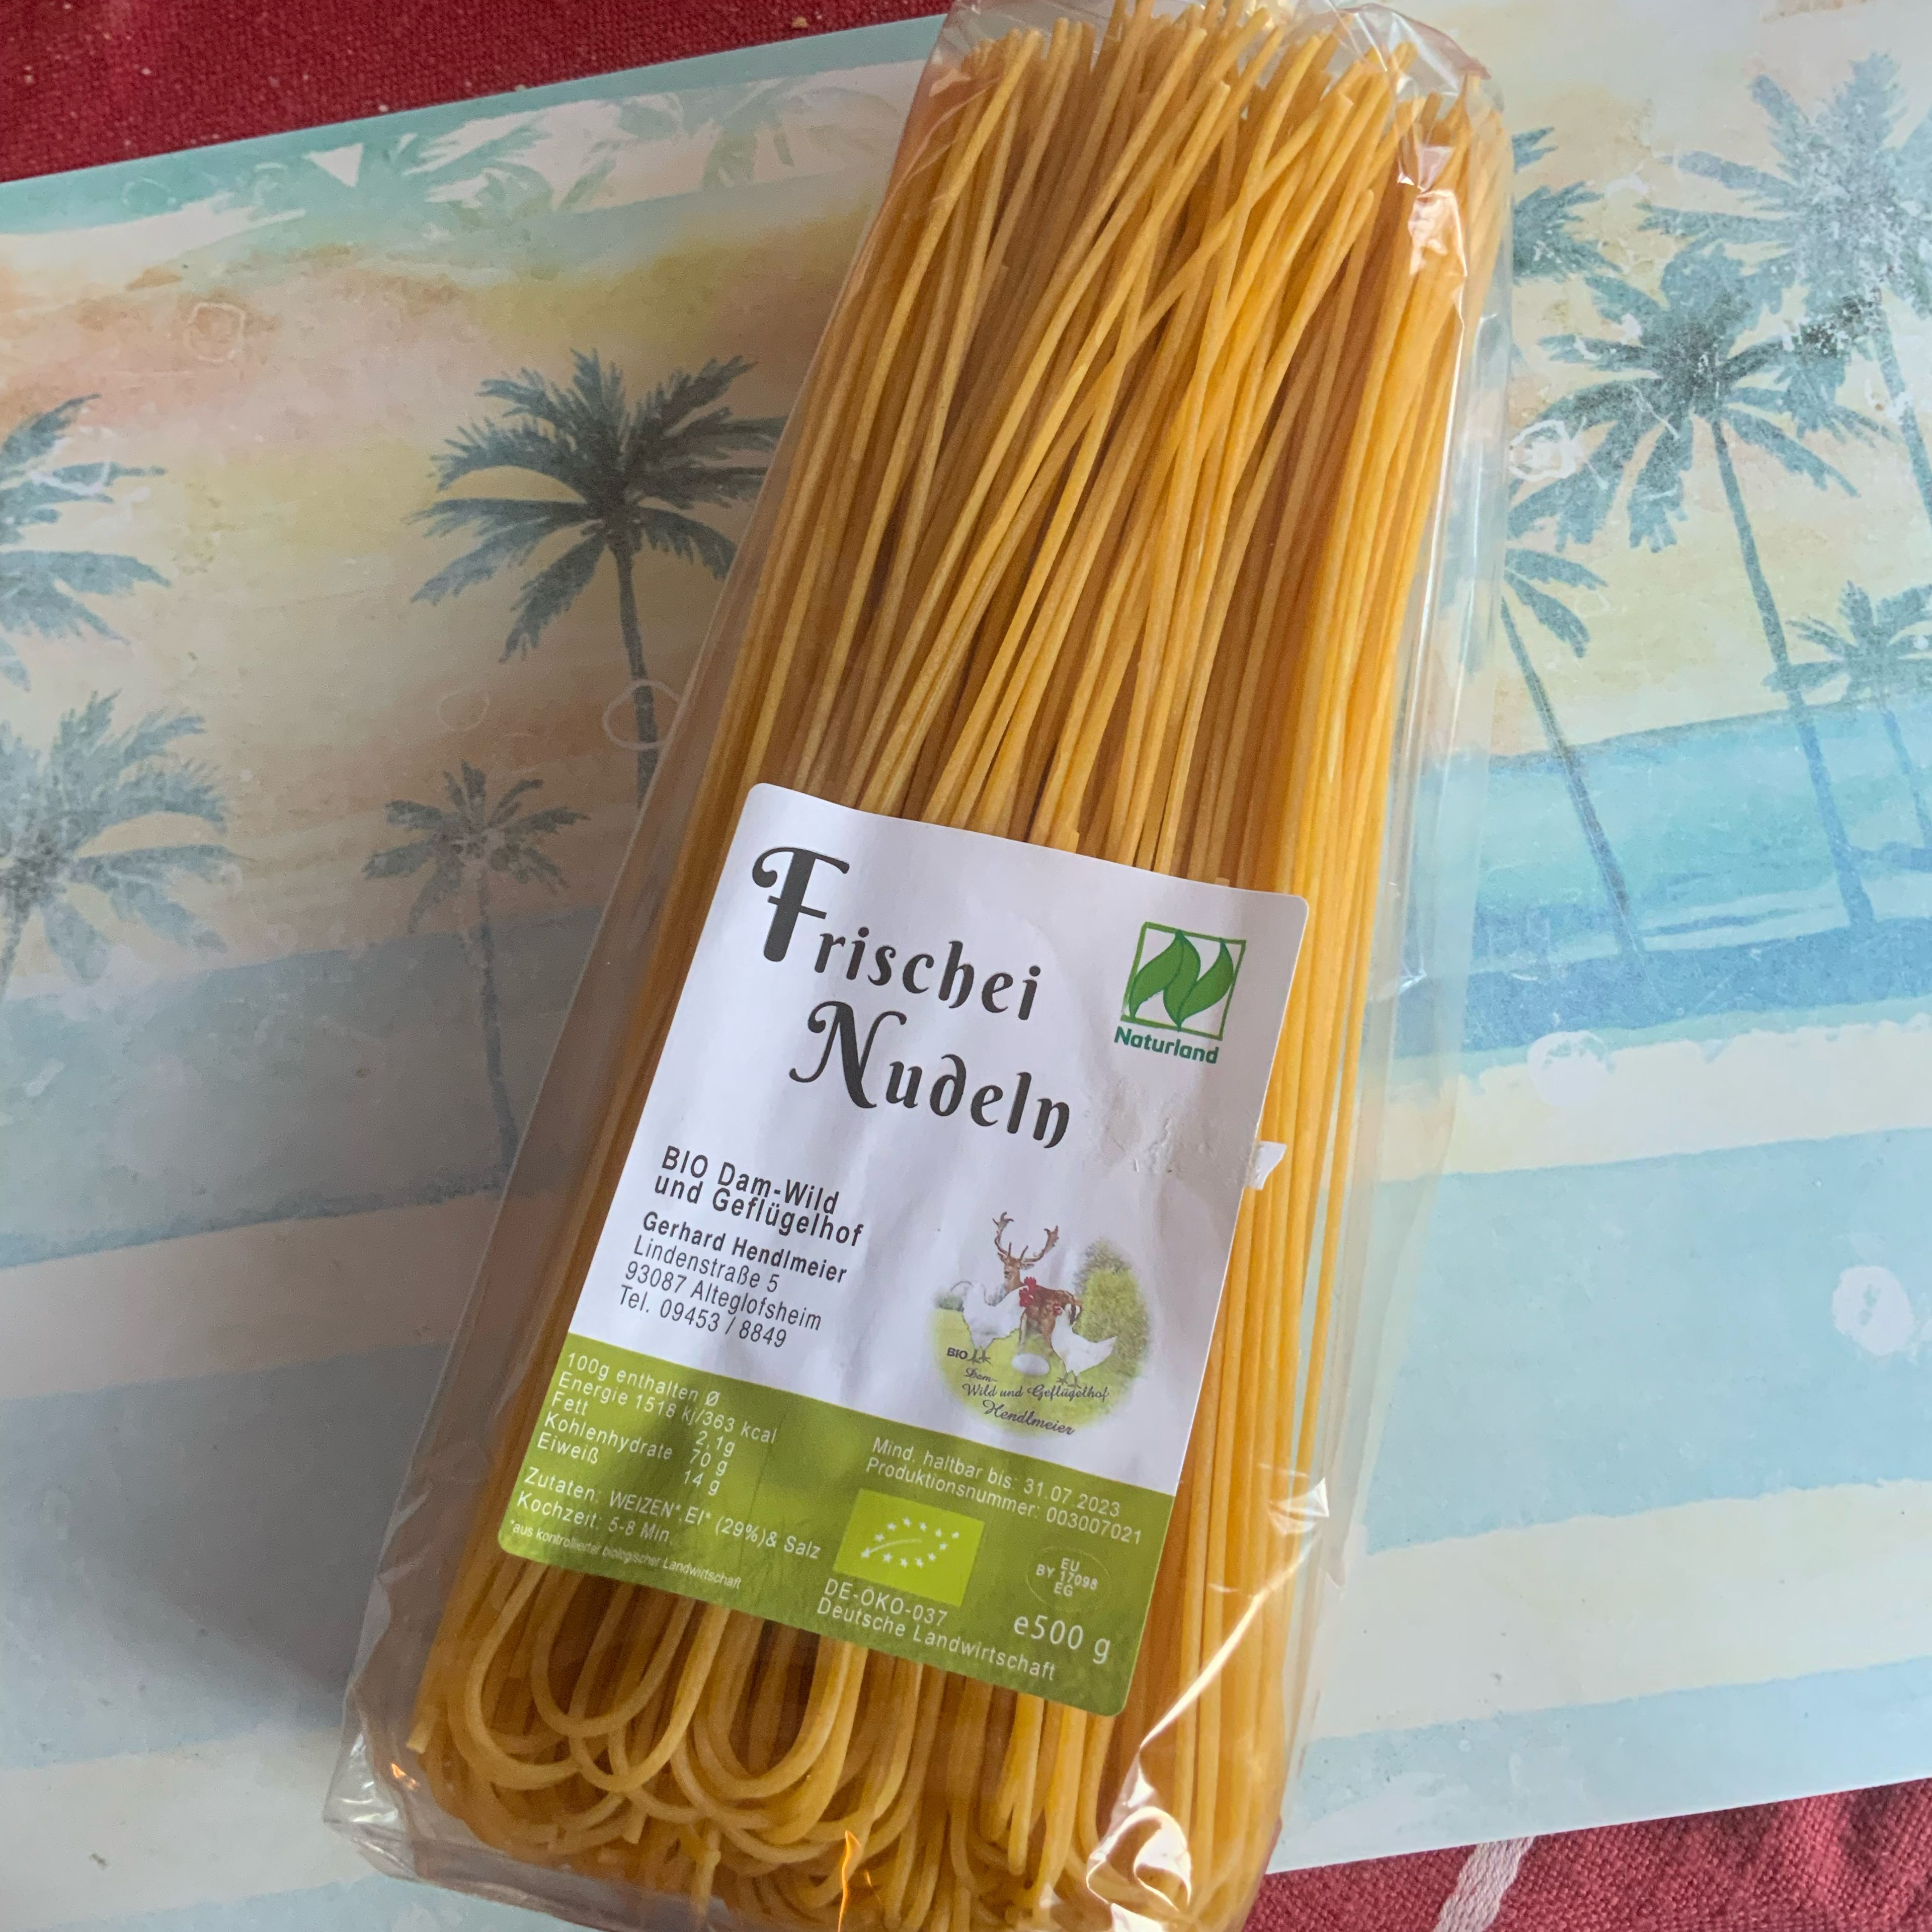 Bei Spaghetti schlage ich auch etwas „aus der Art“. Trotz guten Supermercato mit Original Italienerspaghetti schmecken mir die von Naturland besser. Meist, nicht immer nehme ich daher diese feinen Biospaghetti.